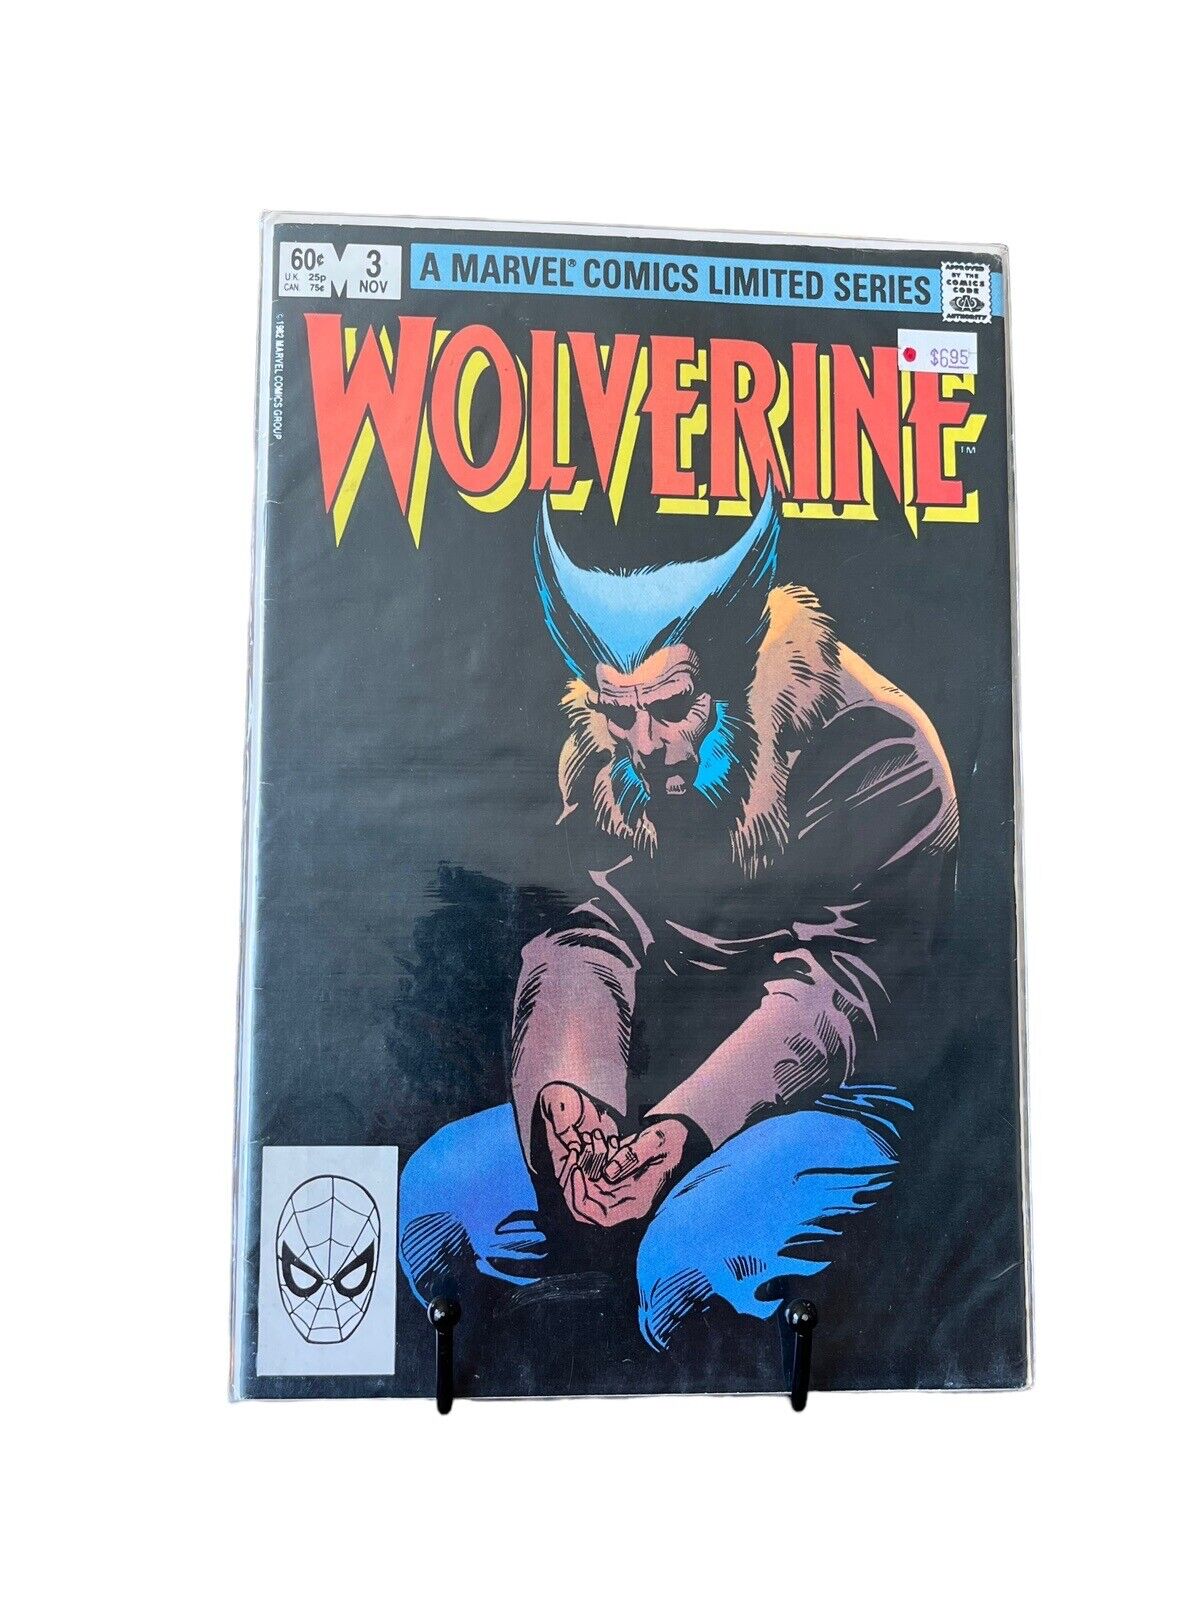 Marvel Comic Wolverine Limited Series #3 Vintage 1982 Frank Miller Bag & Boarded